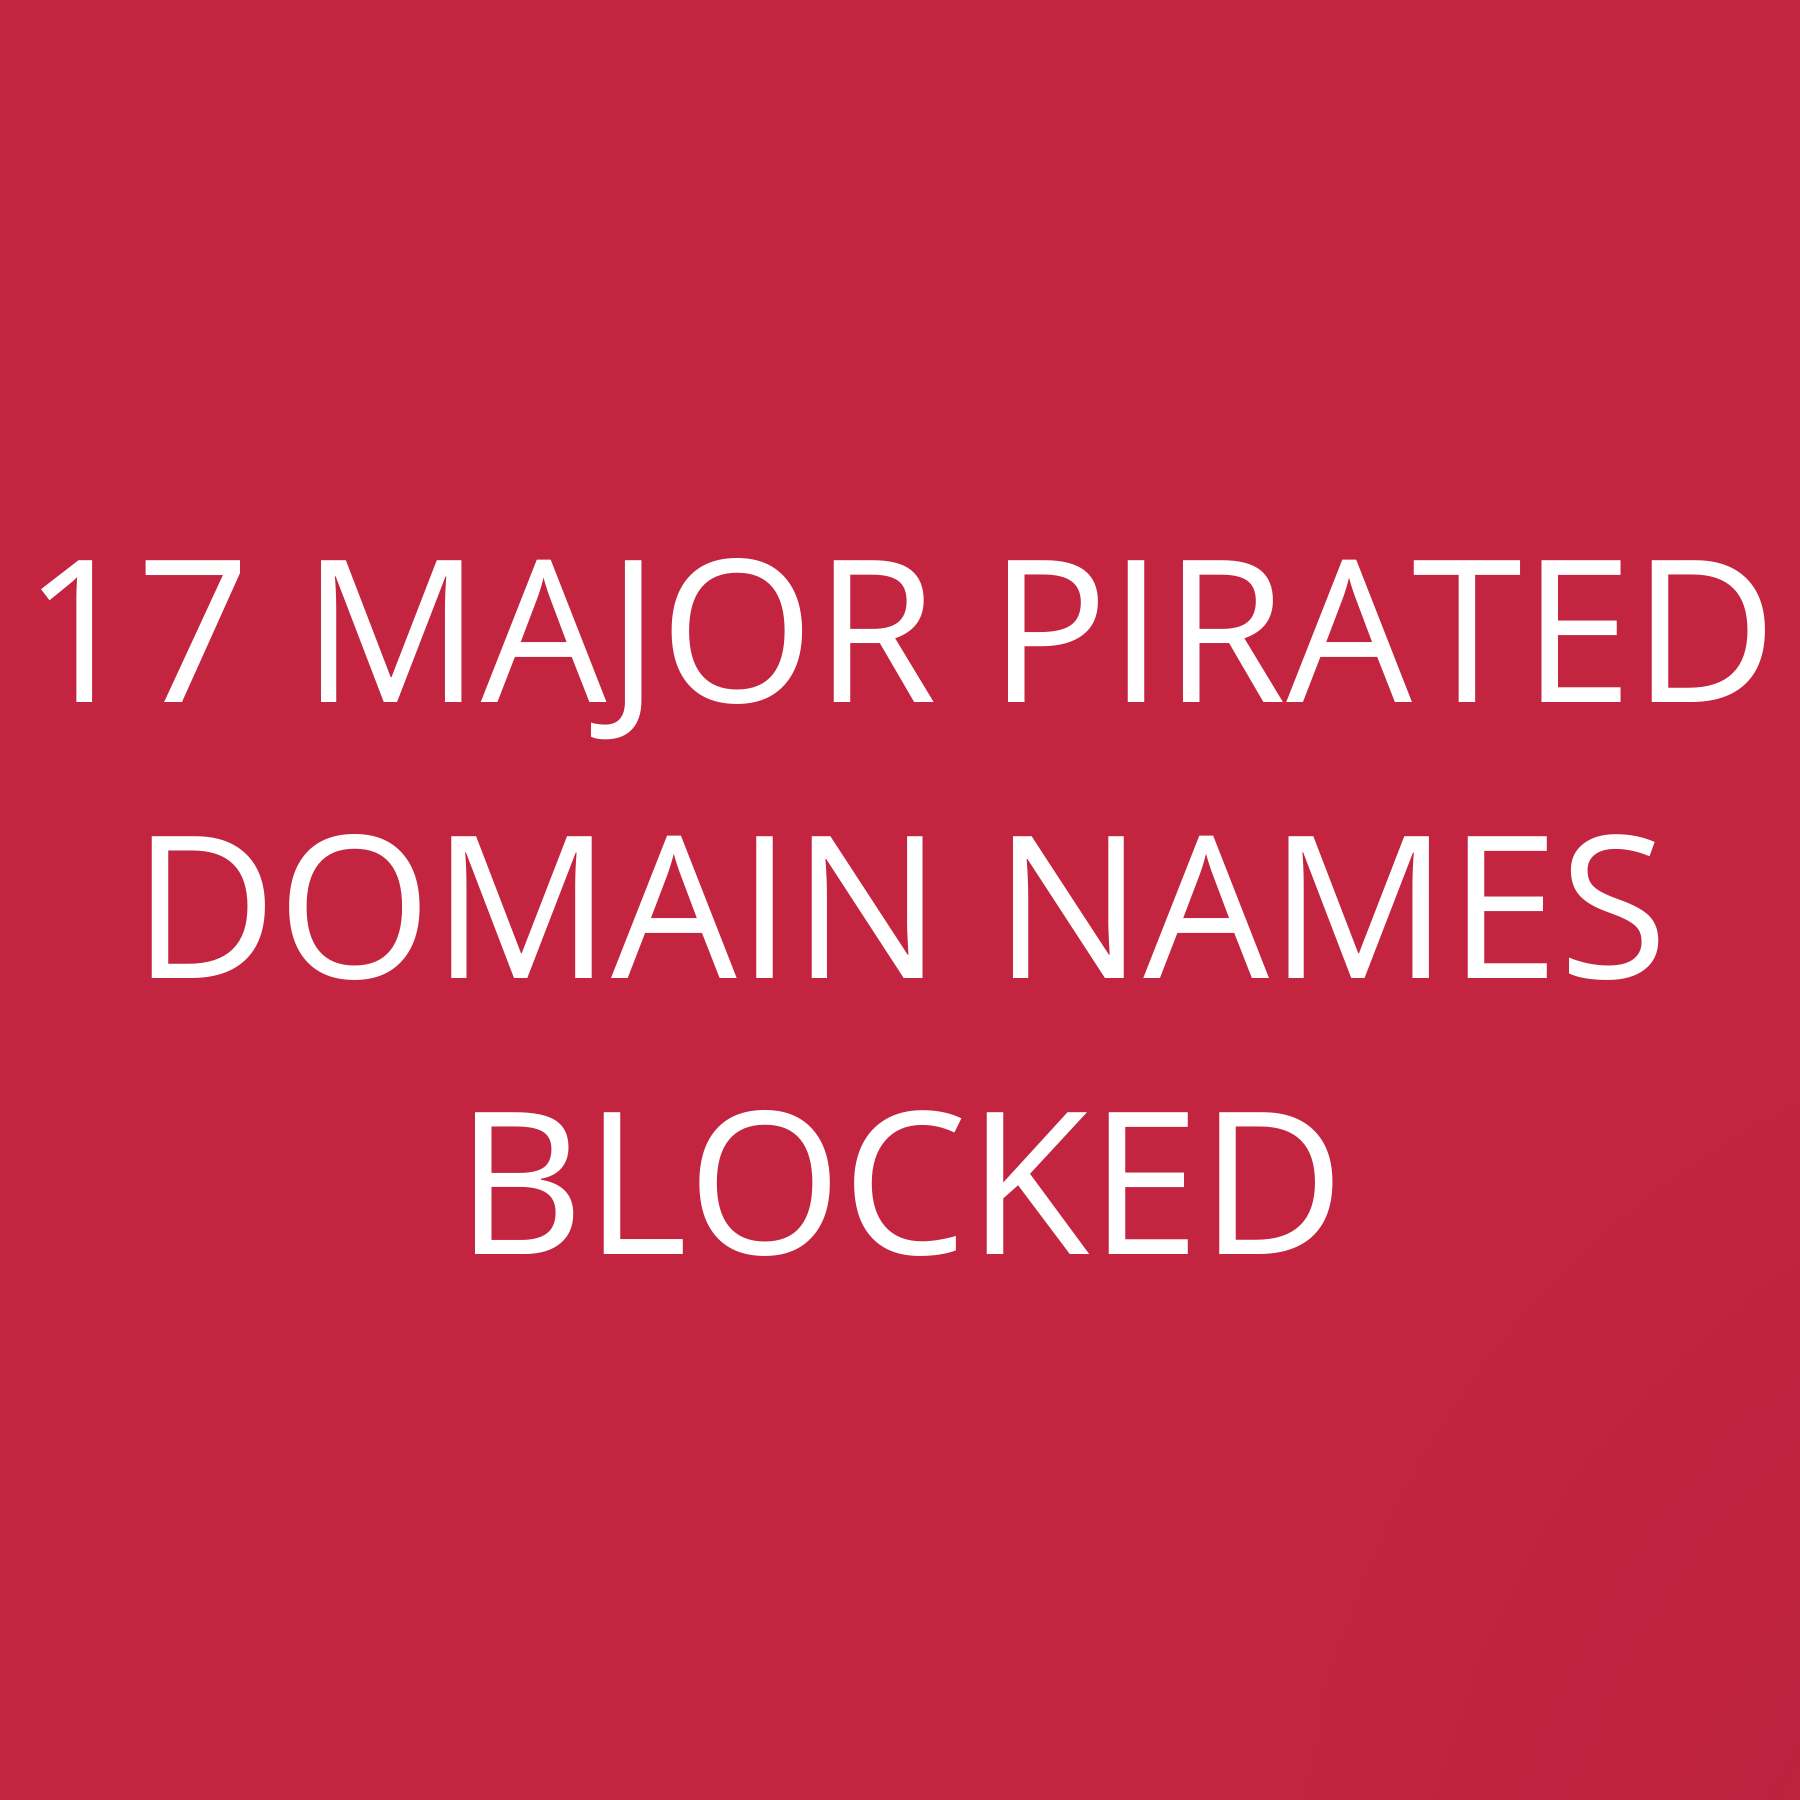 17 Major pirated domain names blocked